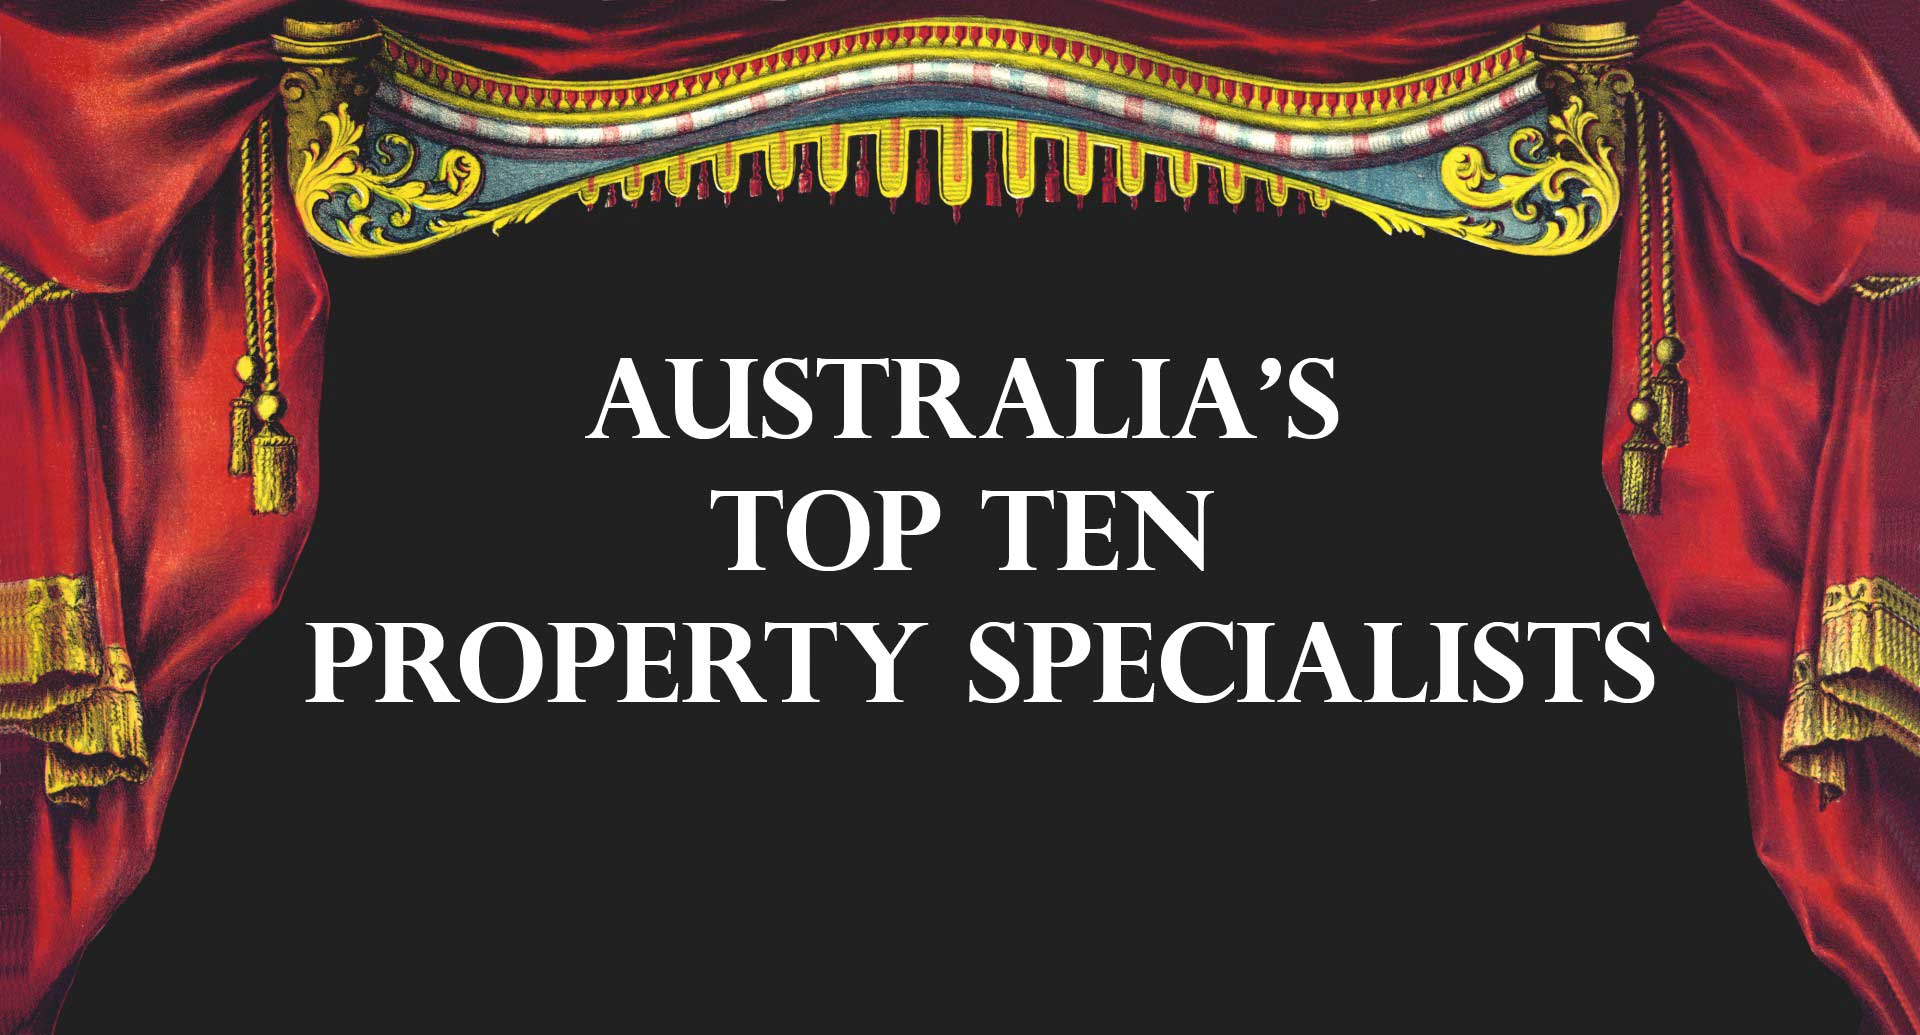 Australia’s Top Ten Property Specialists